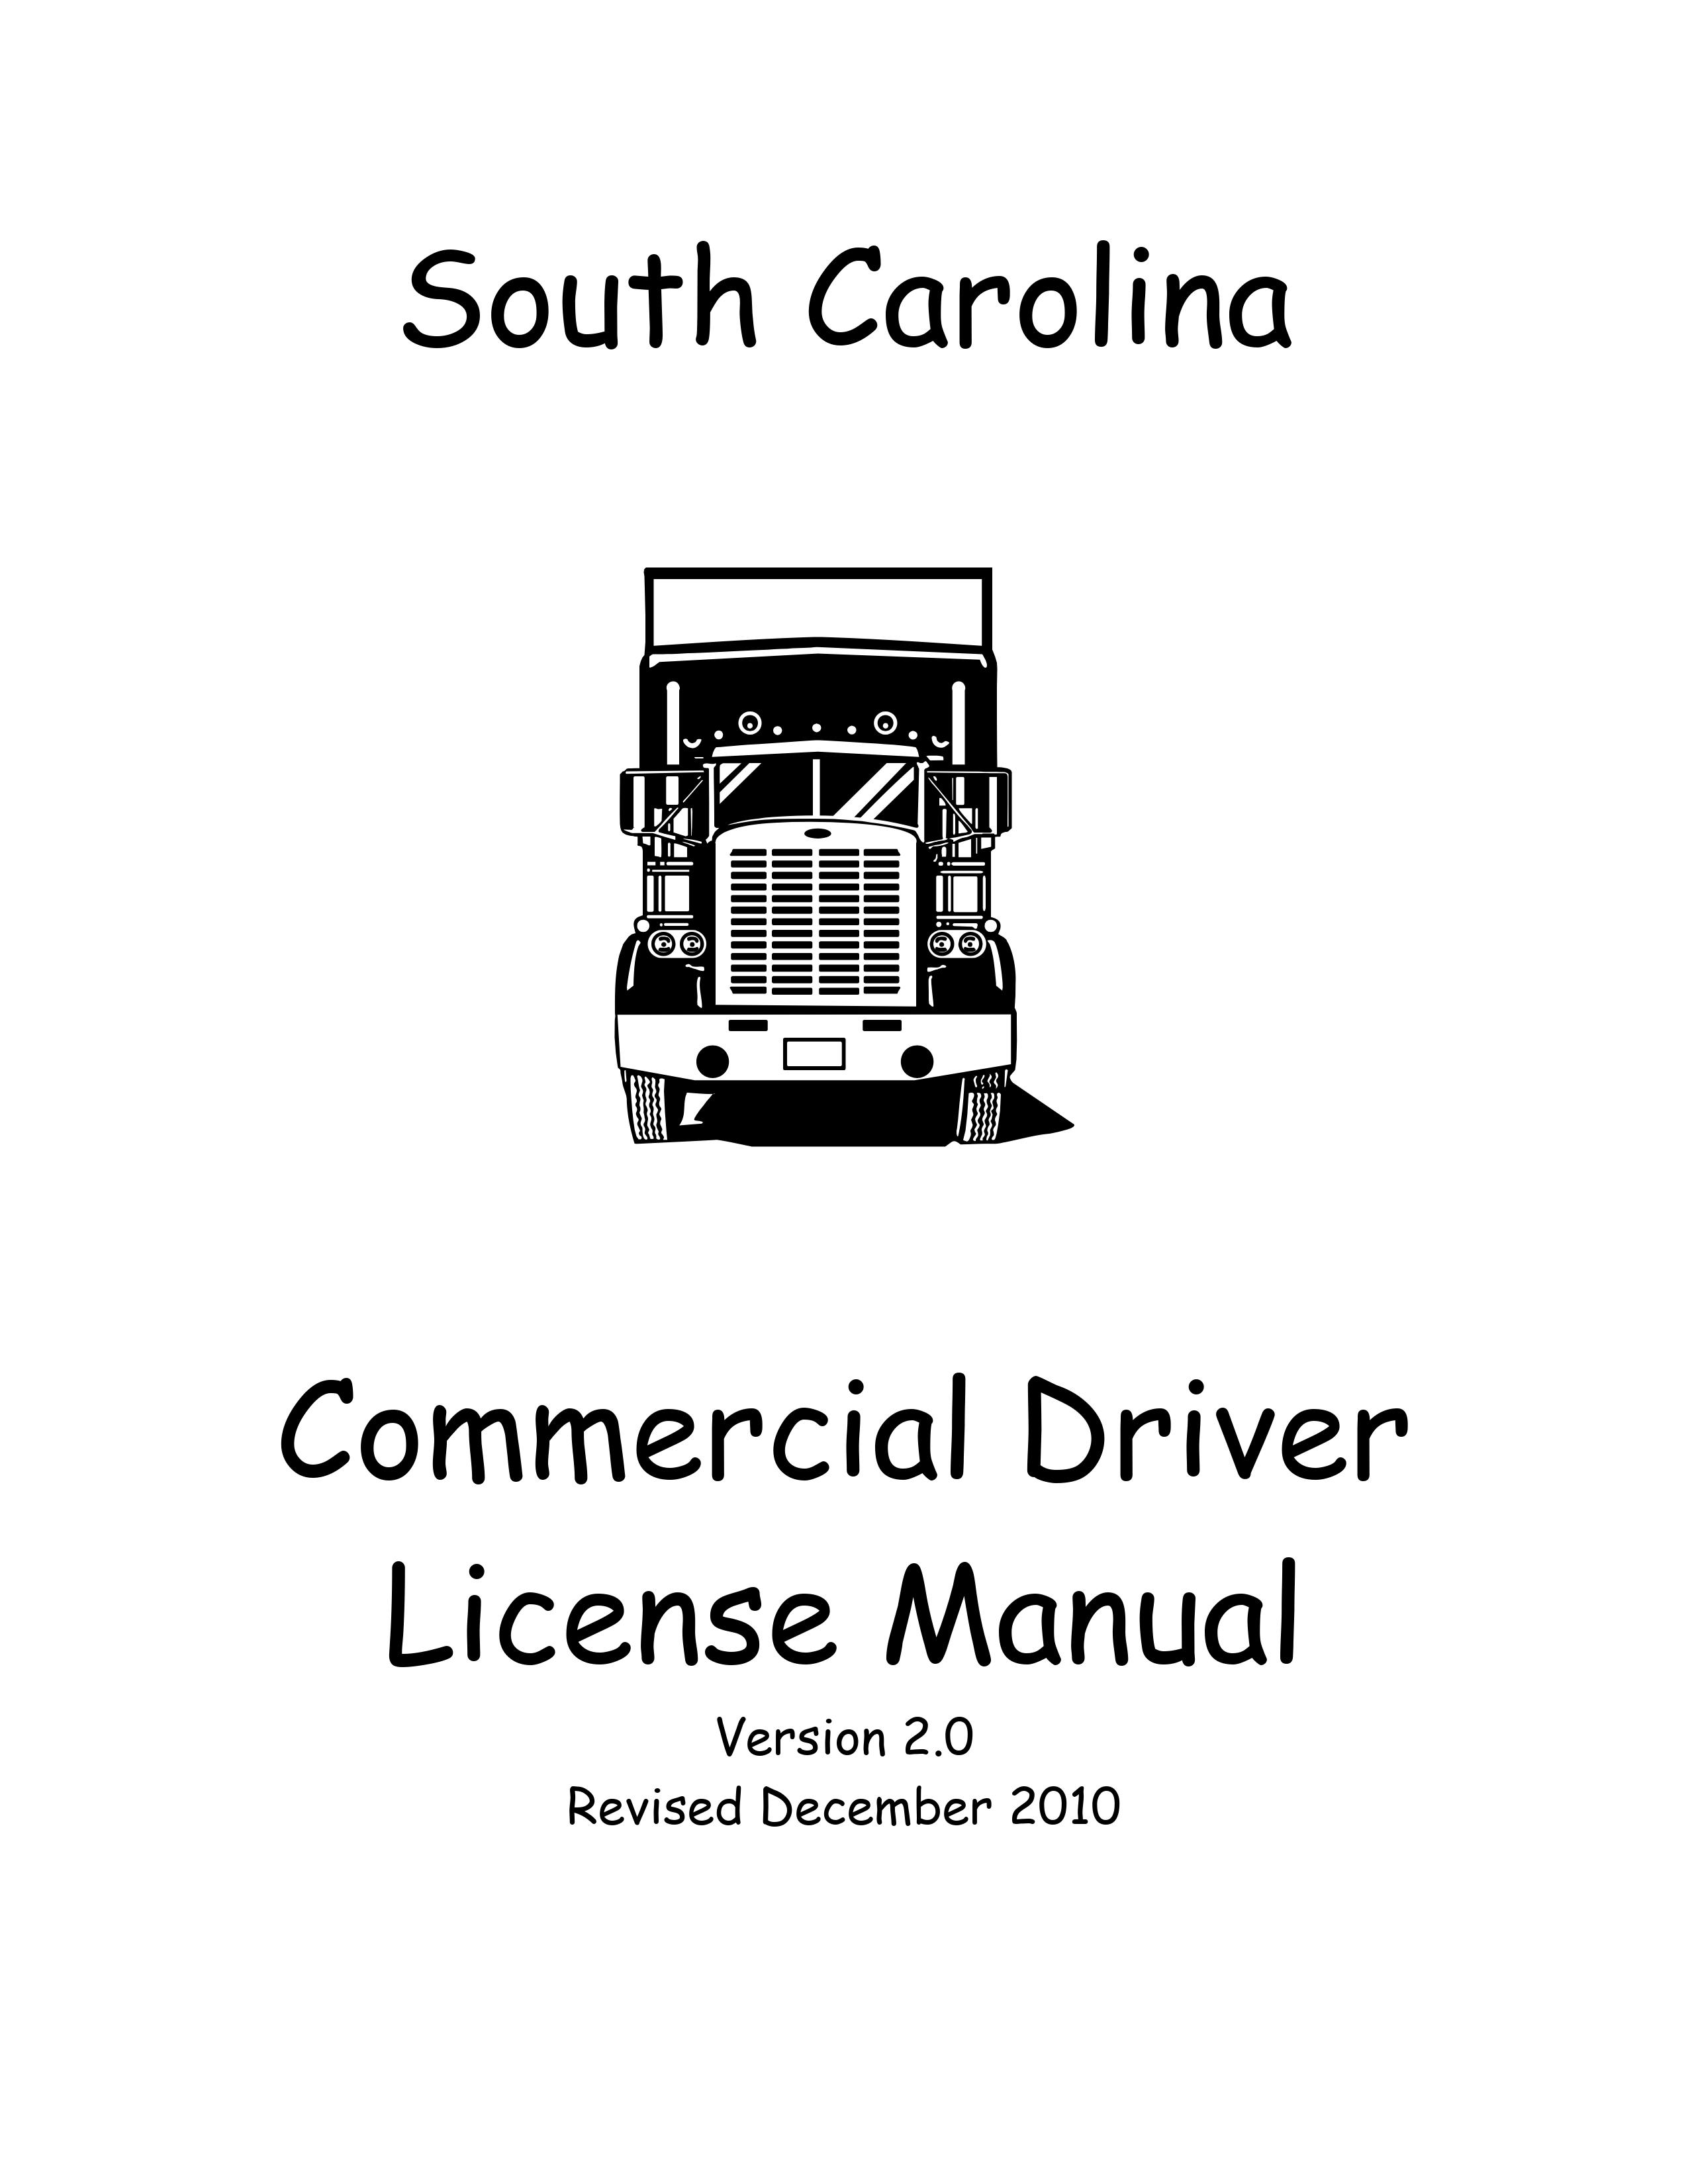 South Carolina's CDL Manual